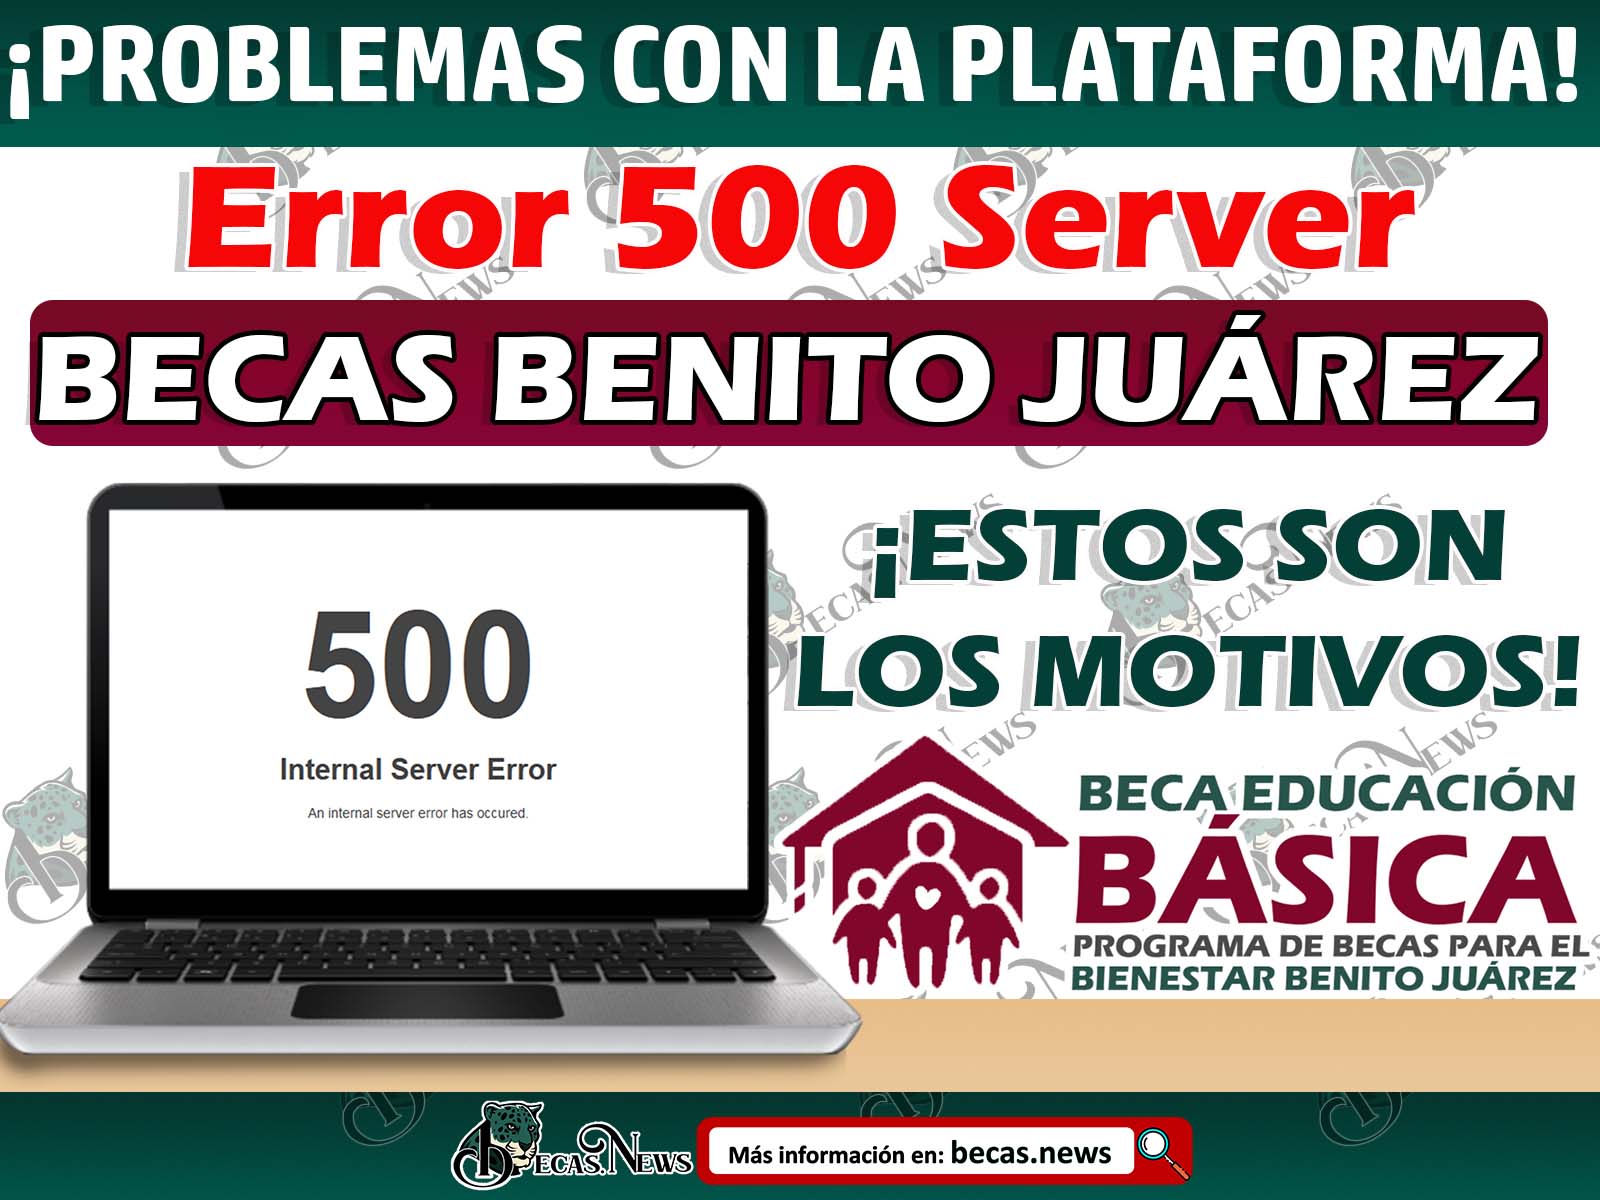 Al ingresar a la pagina de la Cédula Única te marca como Error 500 Server ¡Este es el motivo!